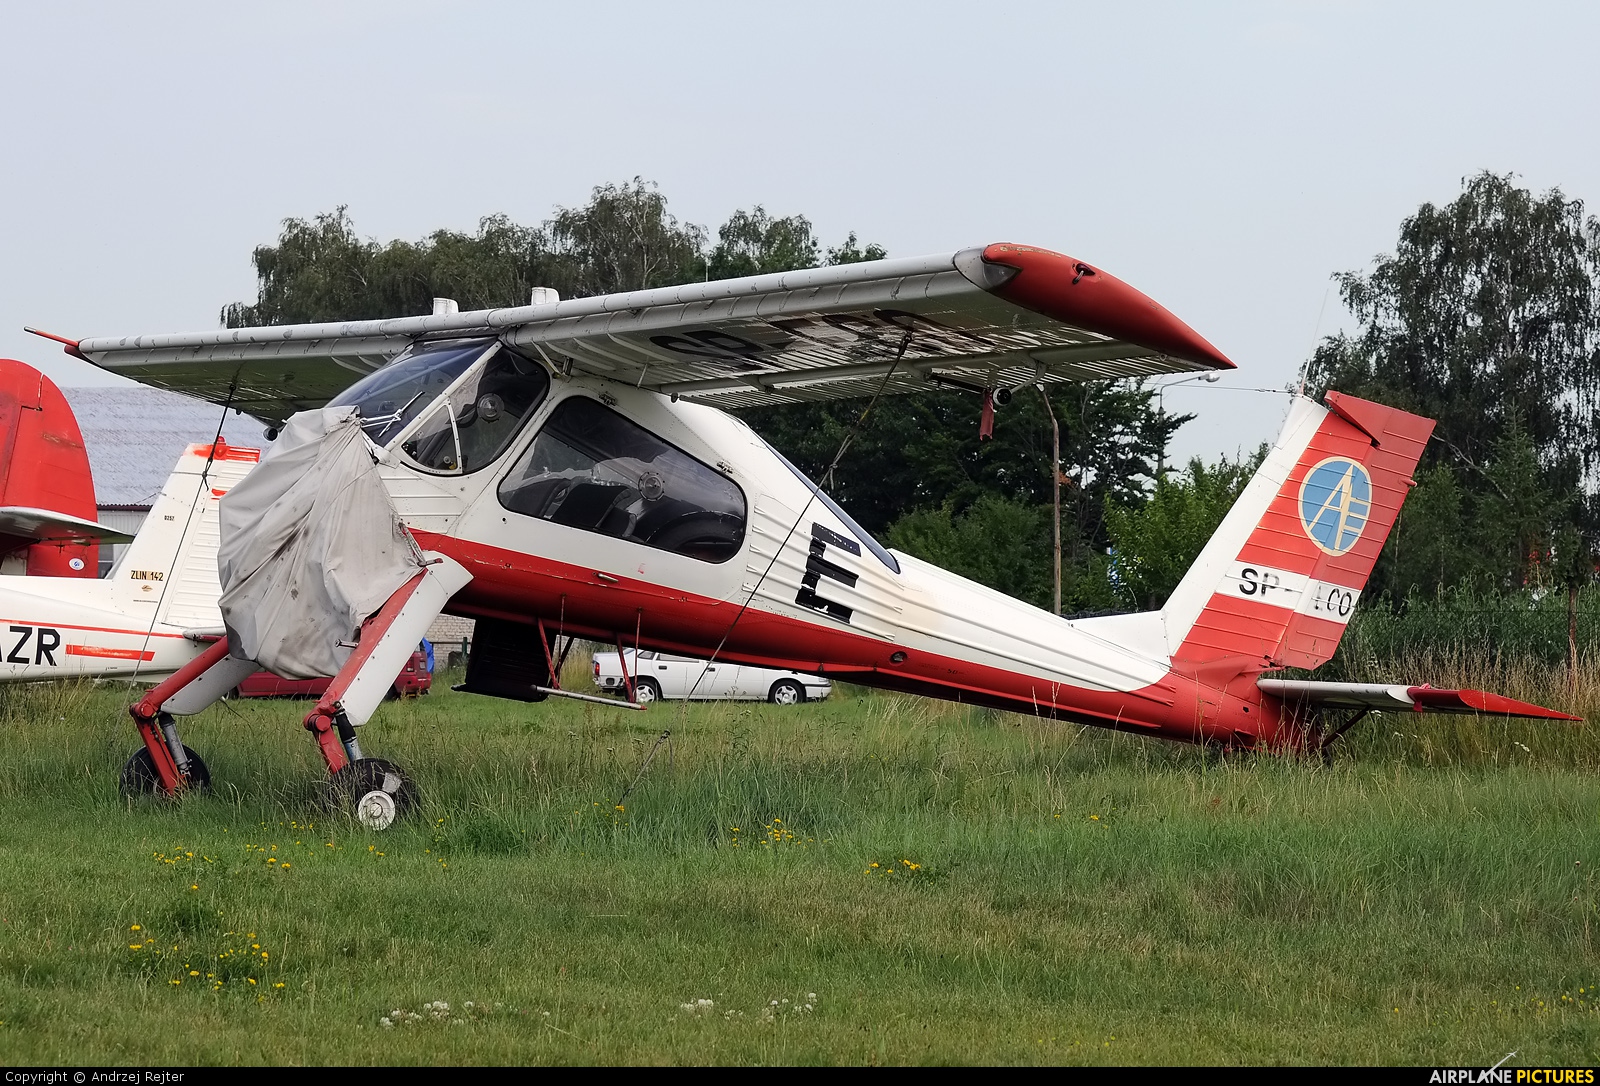 Aeroklub Leszczyński SP-ECO aircraft at Leszno - Strzyżewice